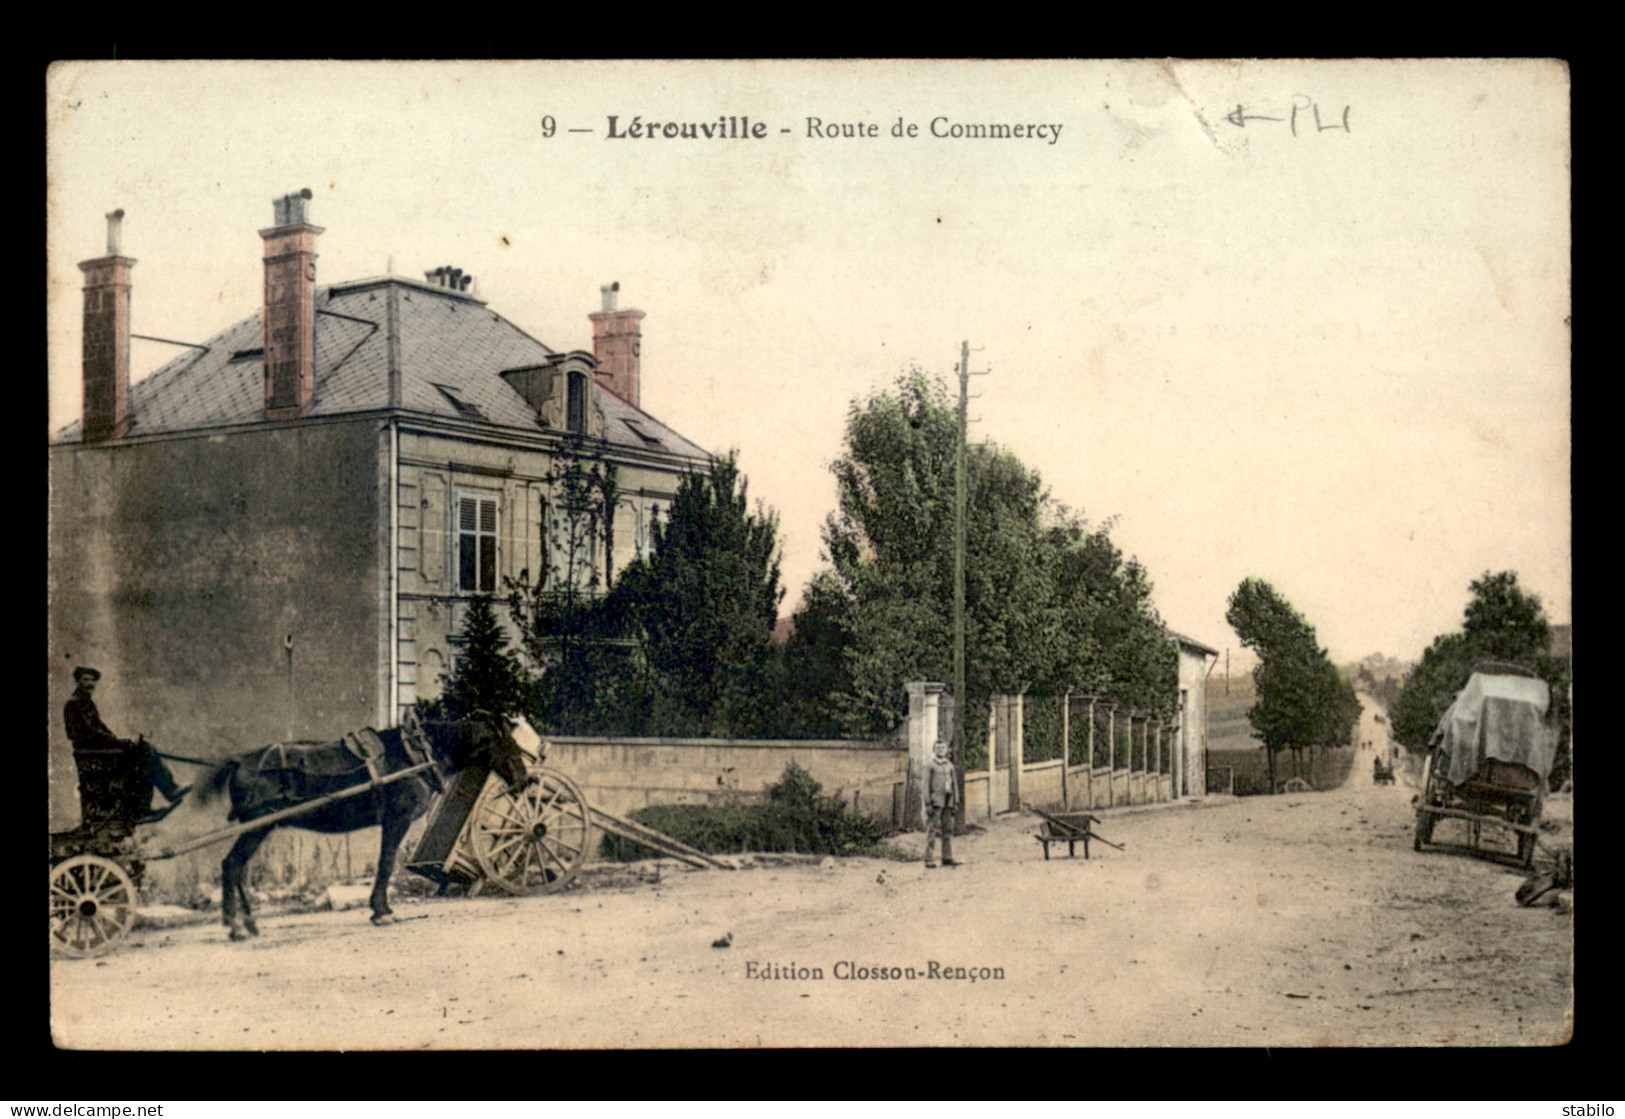 55 - LEROUVILLE - ROUTE DE COMMERCY - EDITEUR CLOSSON-RENCON - Lerouville